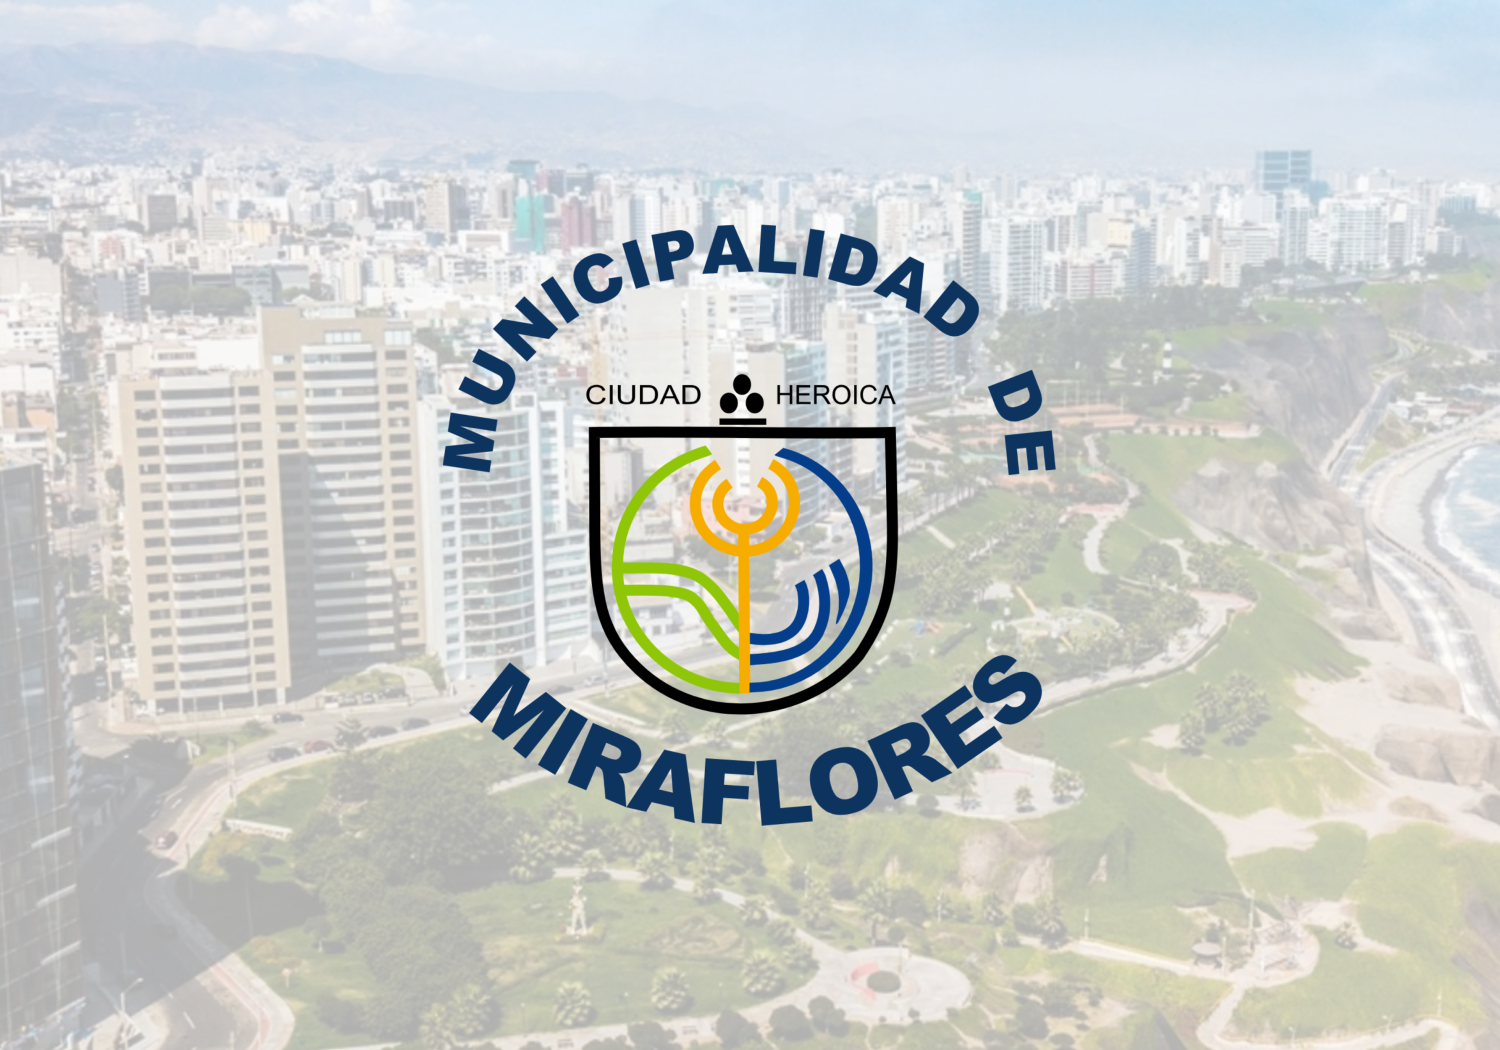 Infraestructura de comunicaciones para el proyecto Smart City Miraflores